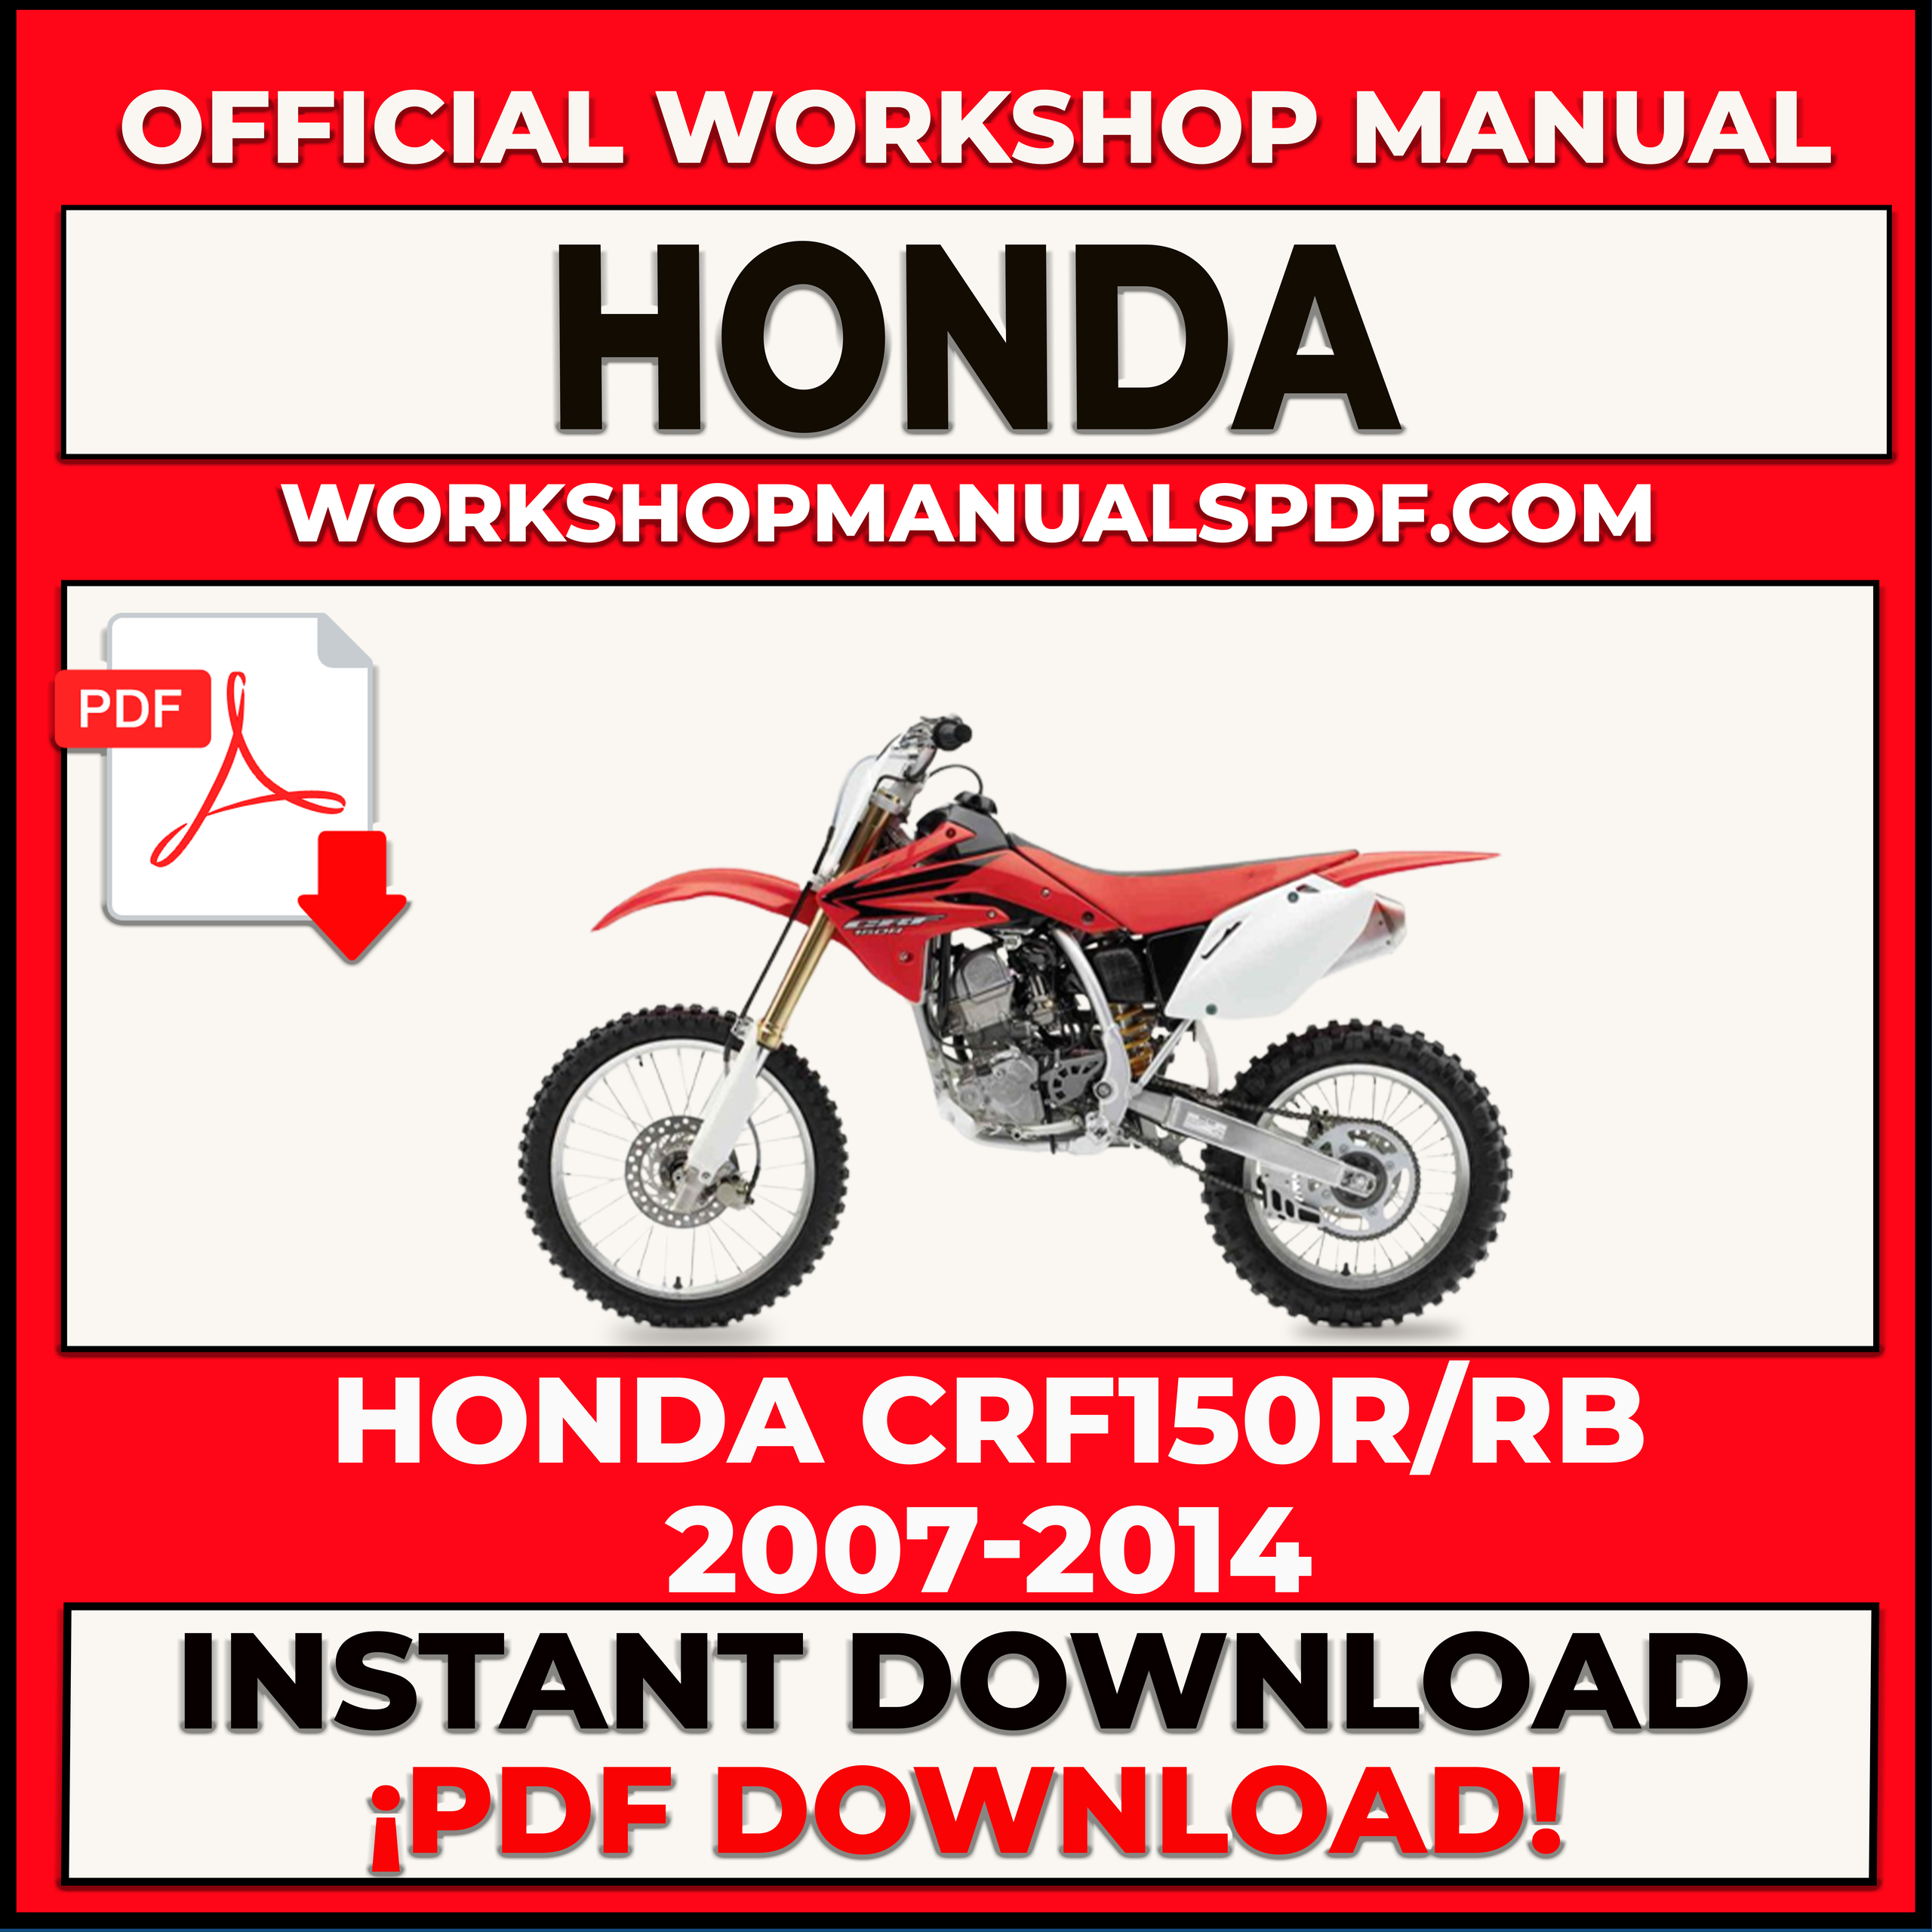 Honda CRF150R and CRF150RB 2007-2014 Workshop Repair Manual